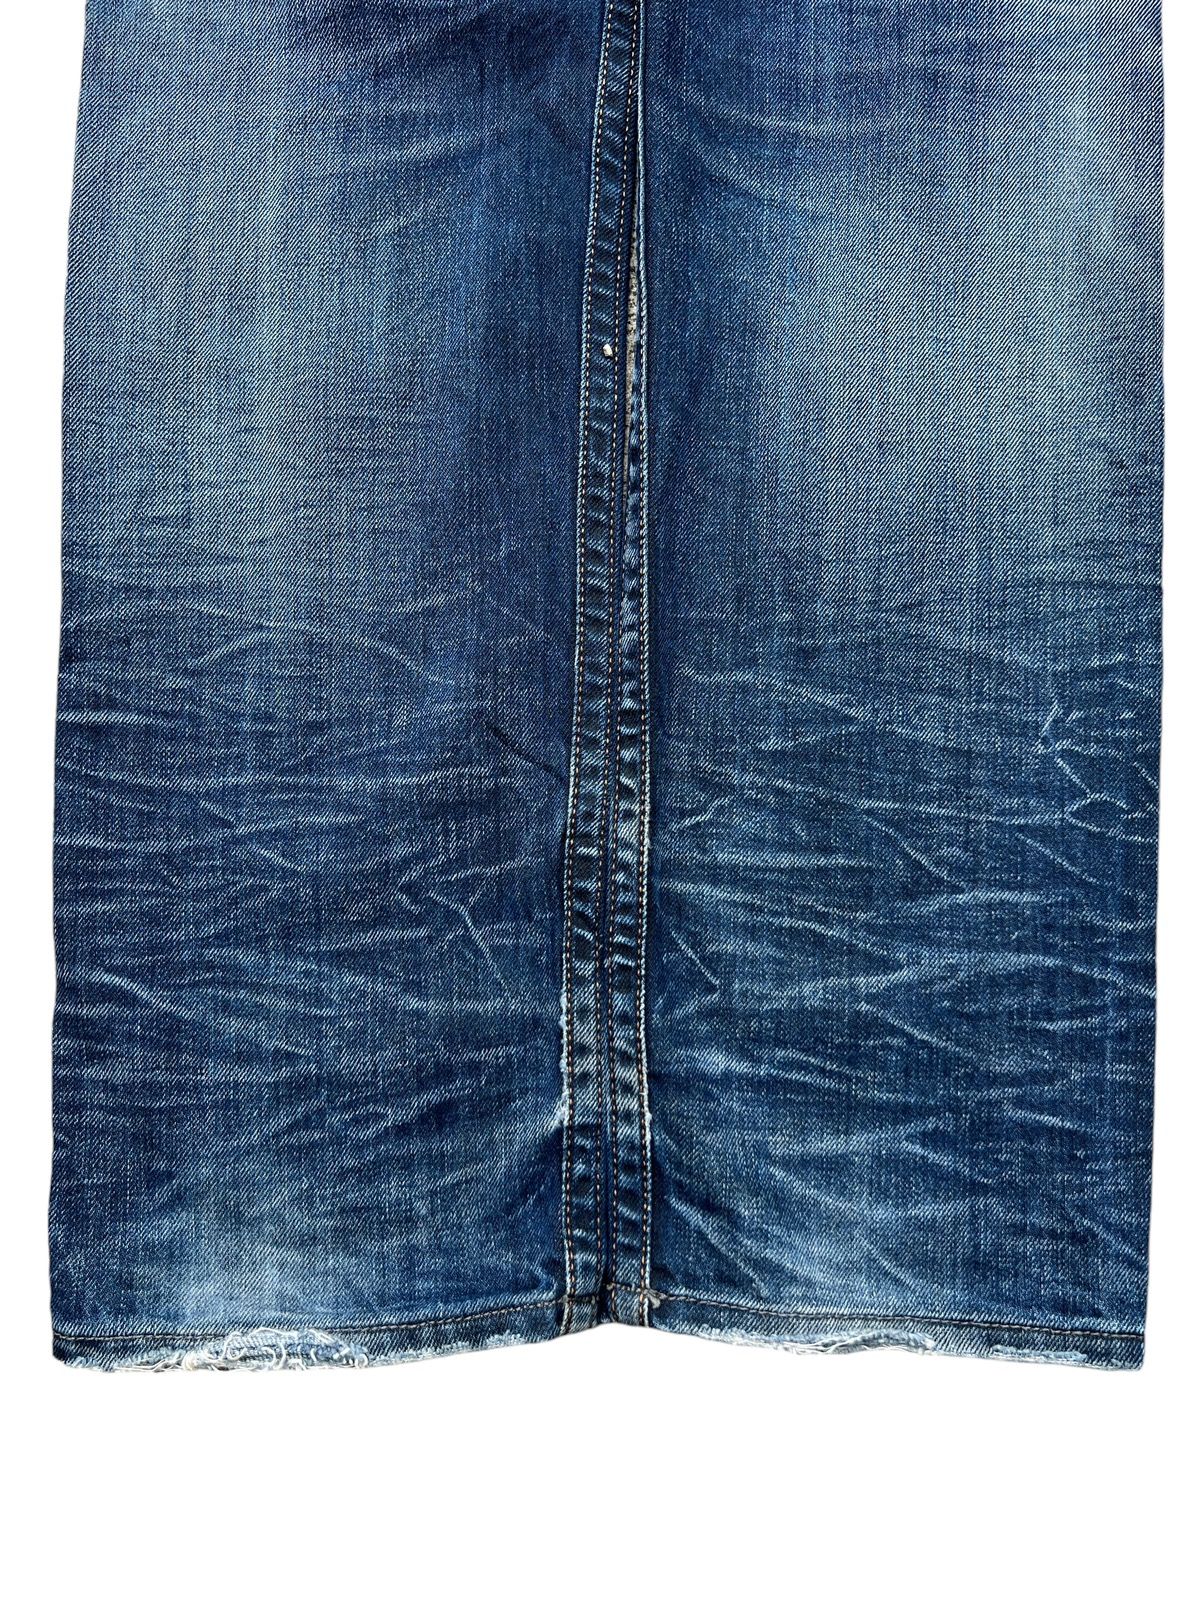 Vintage Diesel Industry Distressed Denim Jeans 32x31 - 6